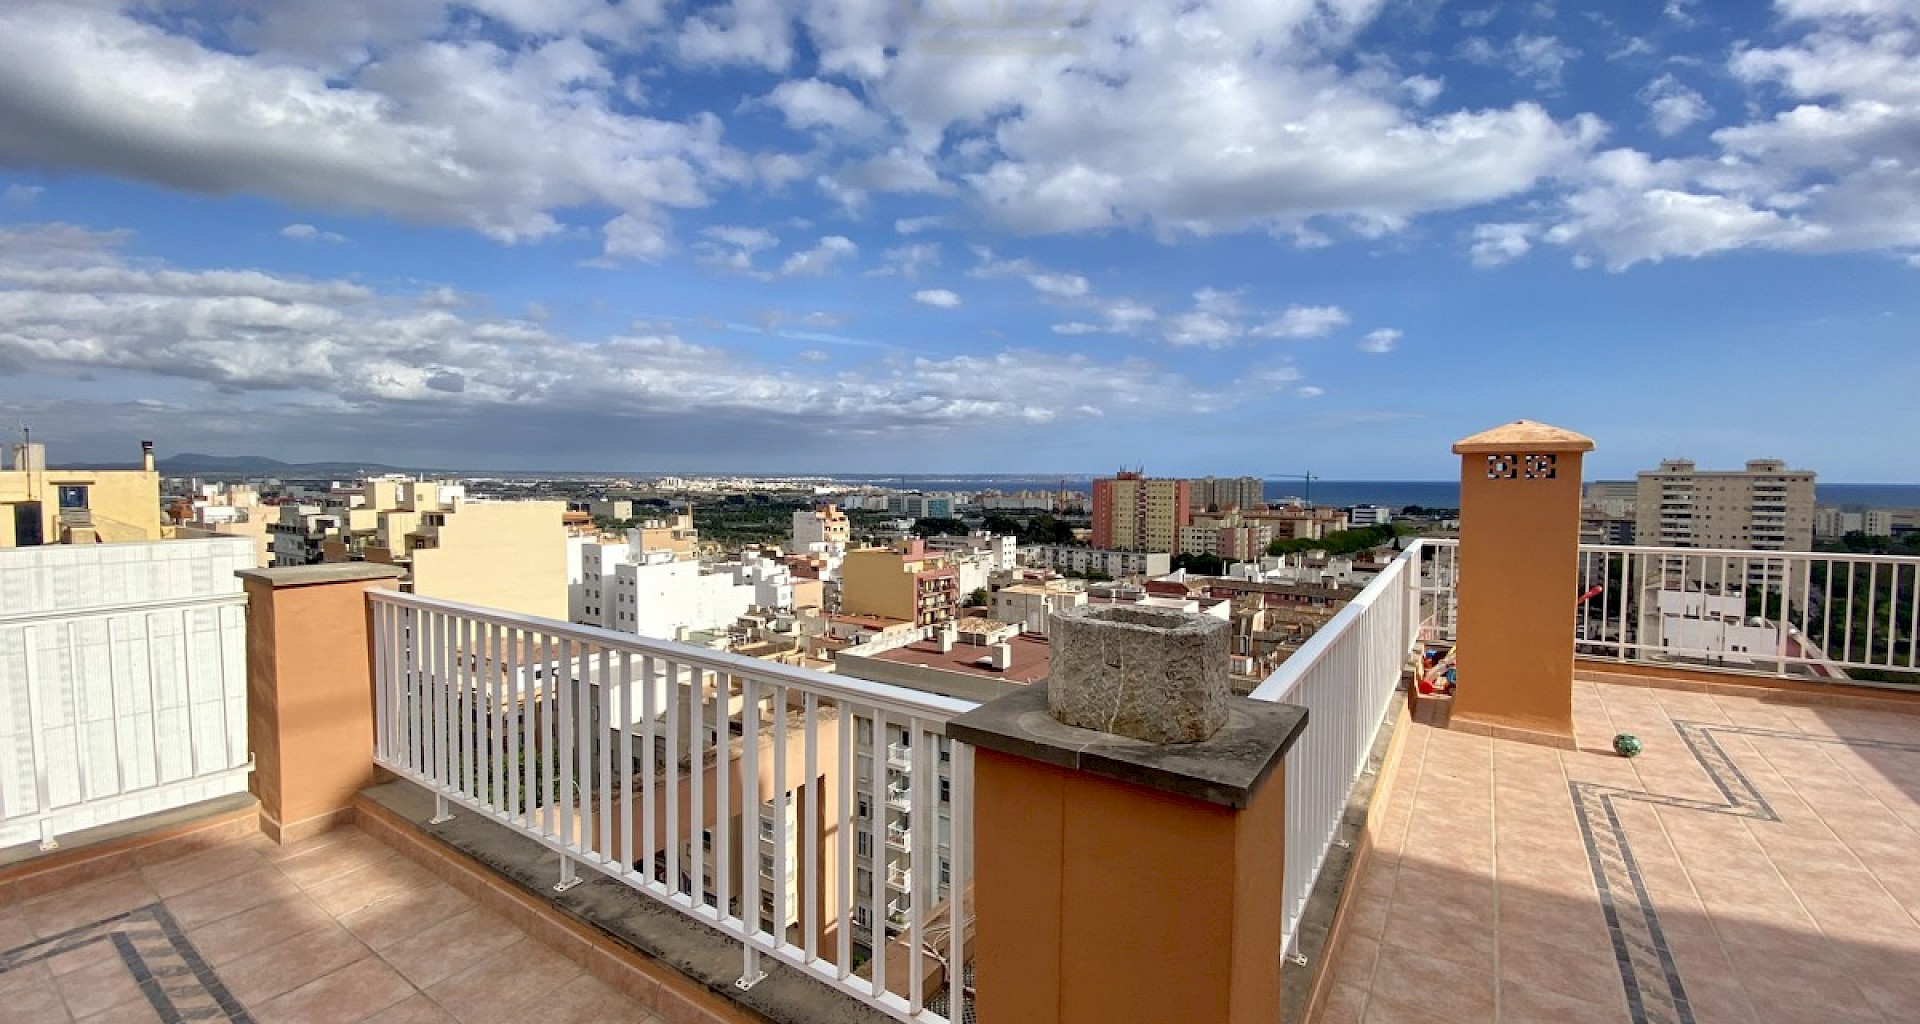 KROHN & LUEDEMANN Ático en Palma con sensacionales vistas a la ciudad y gran terraza 